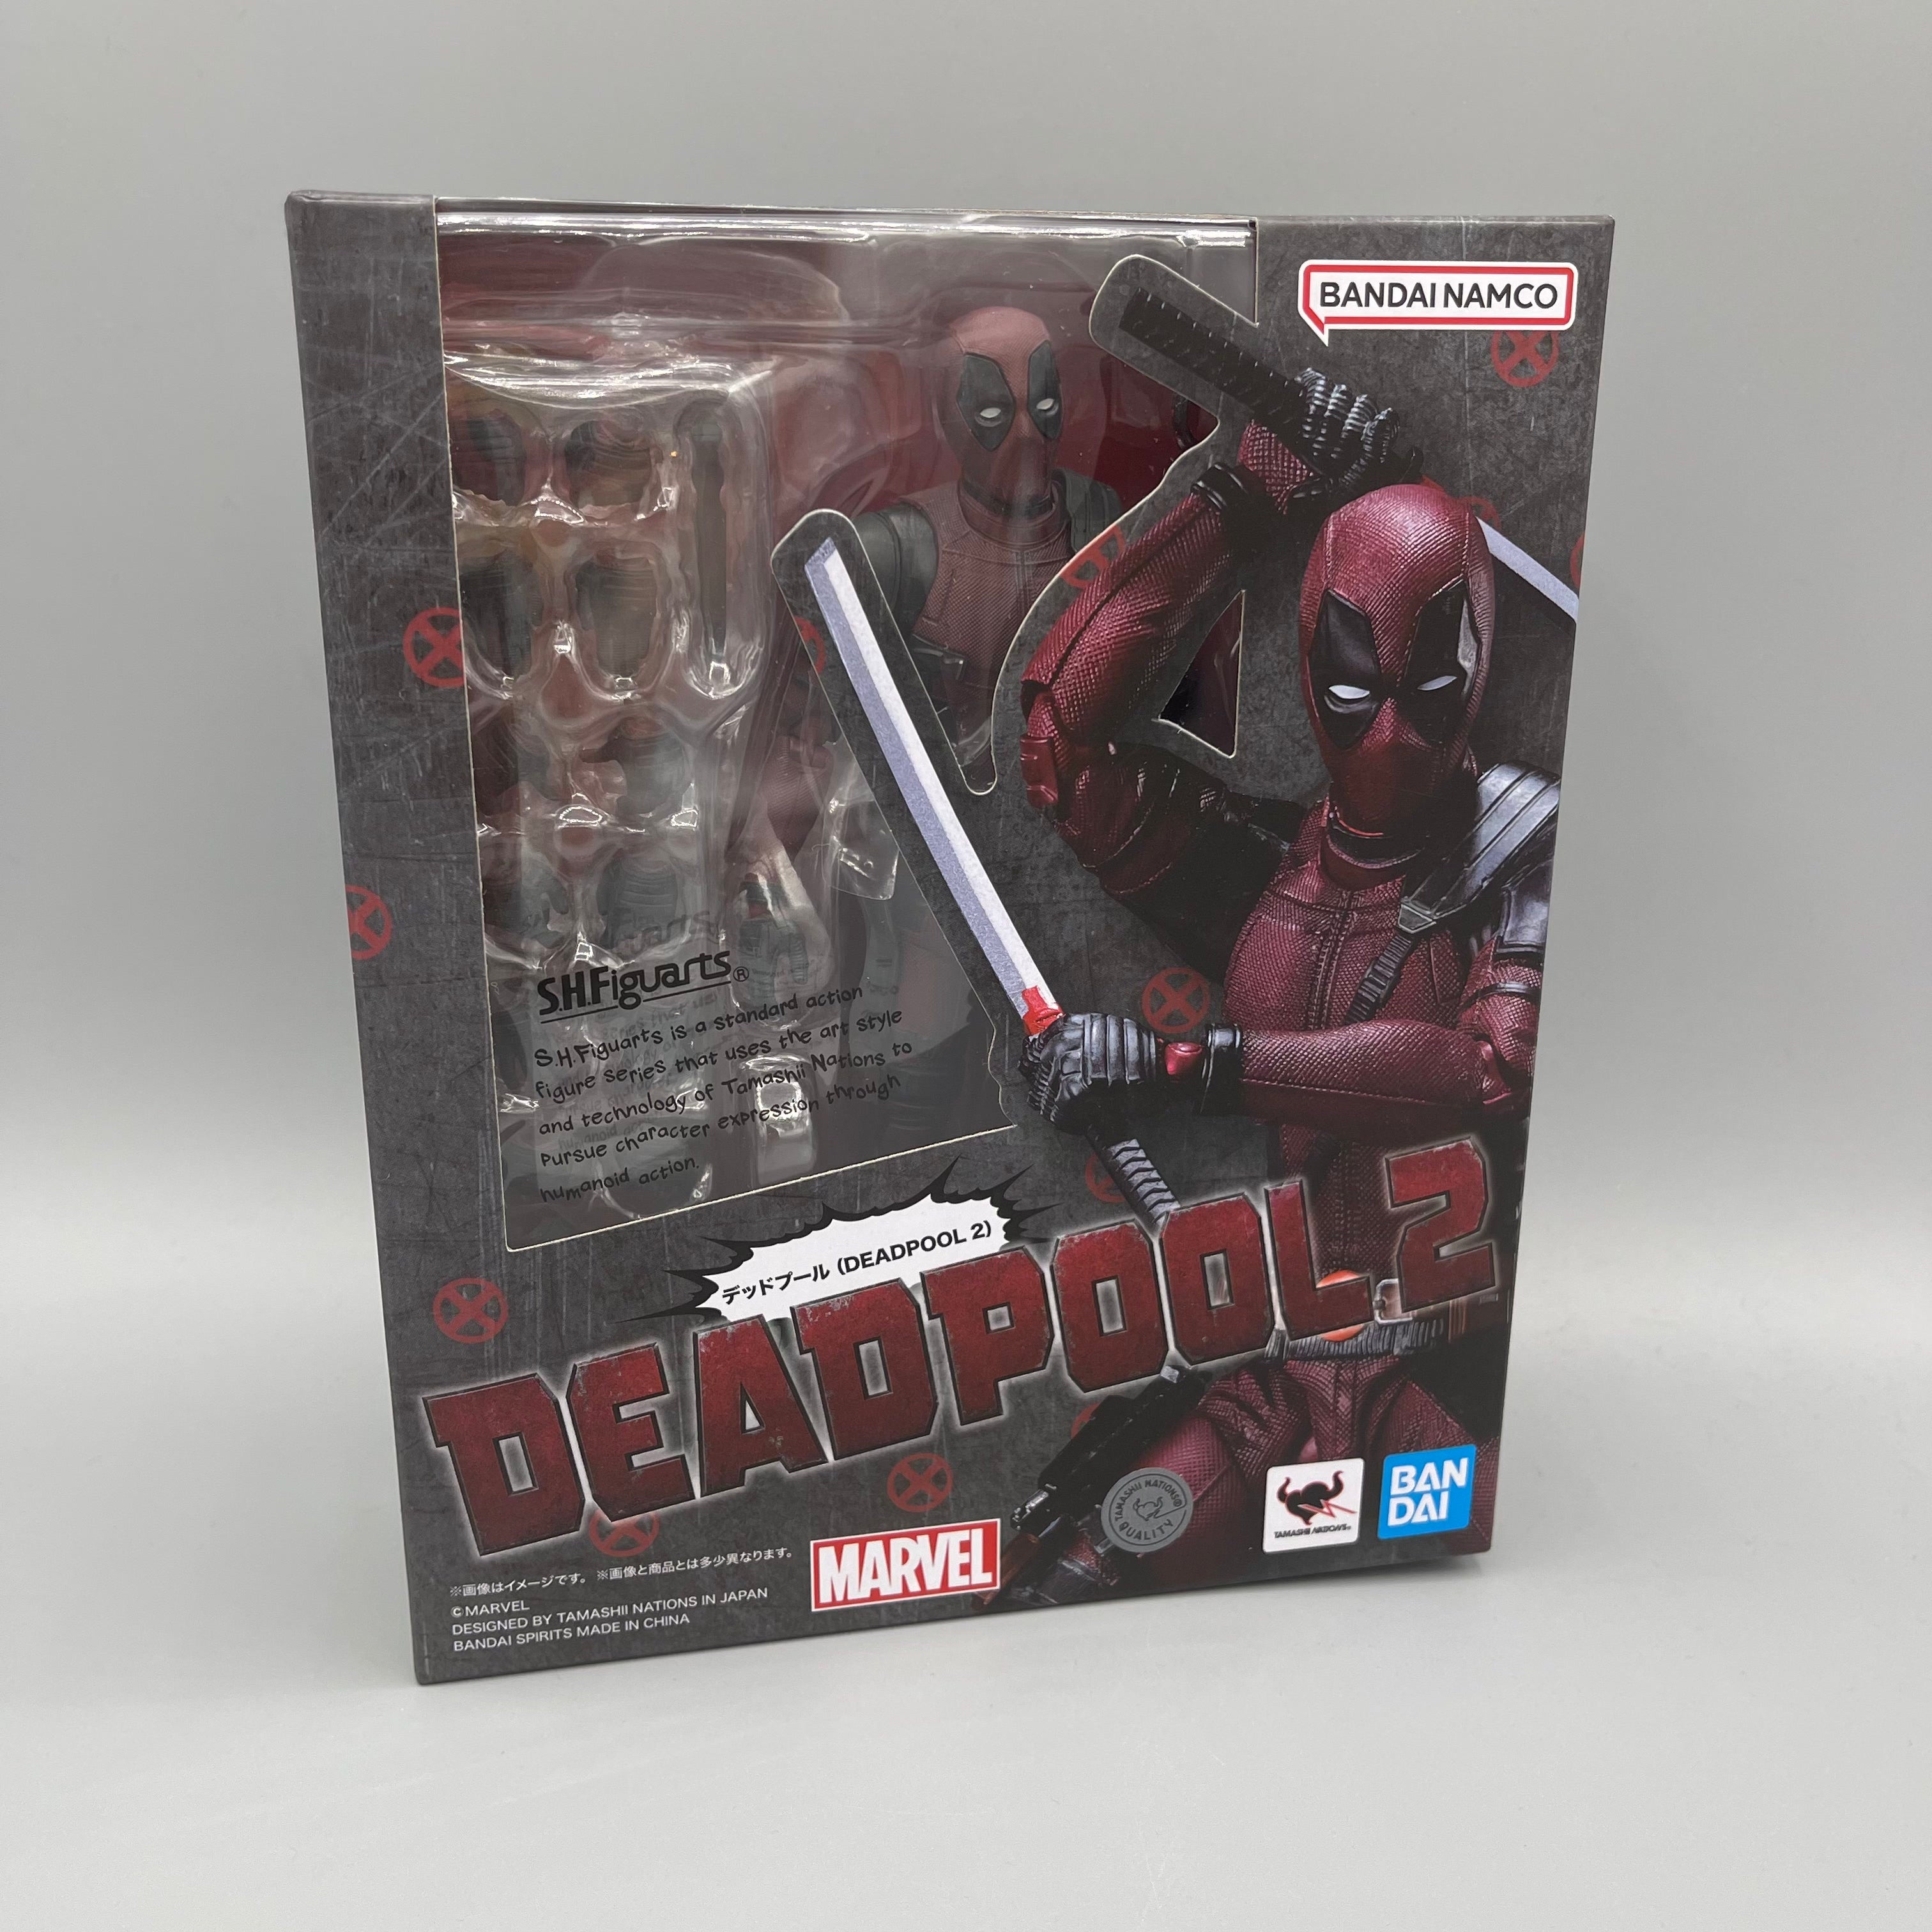 DEADPOOL SH Figuarts Deadpool Bandai